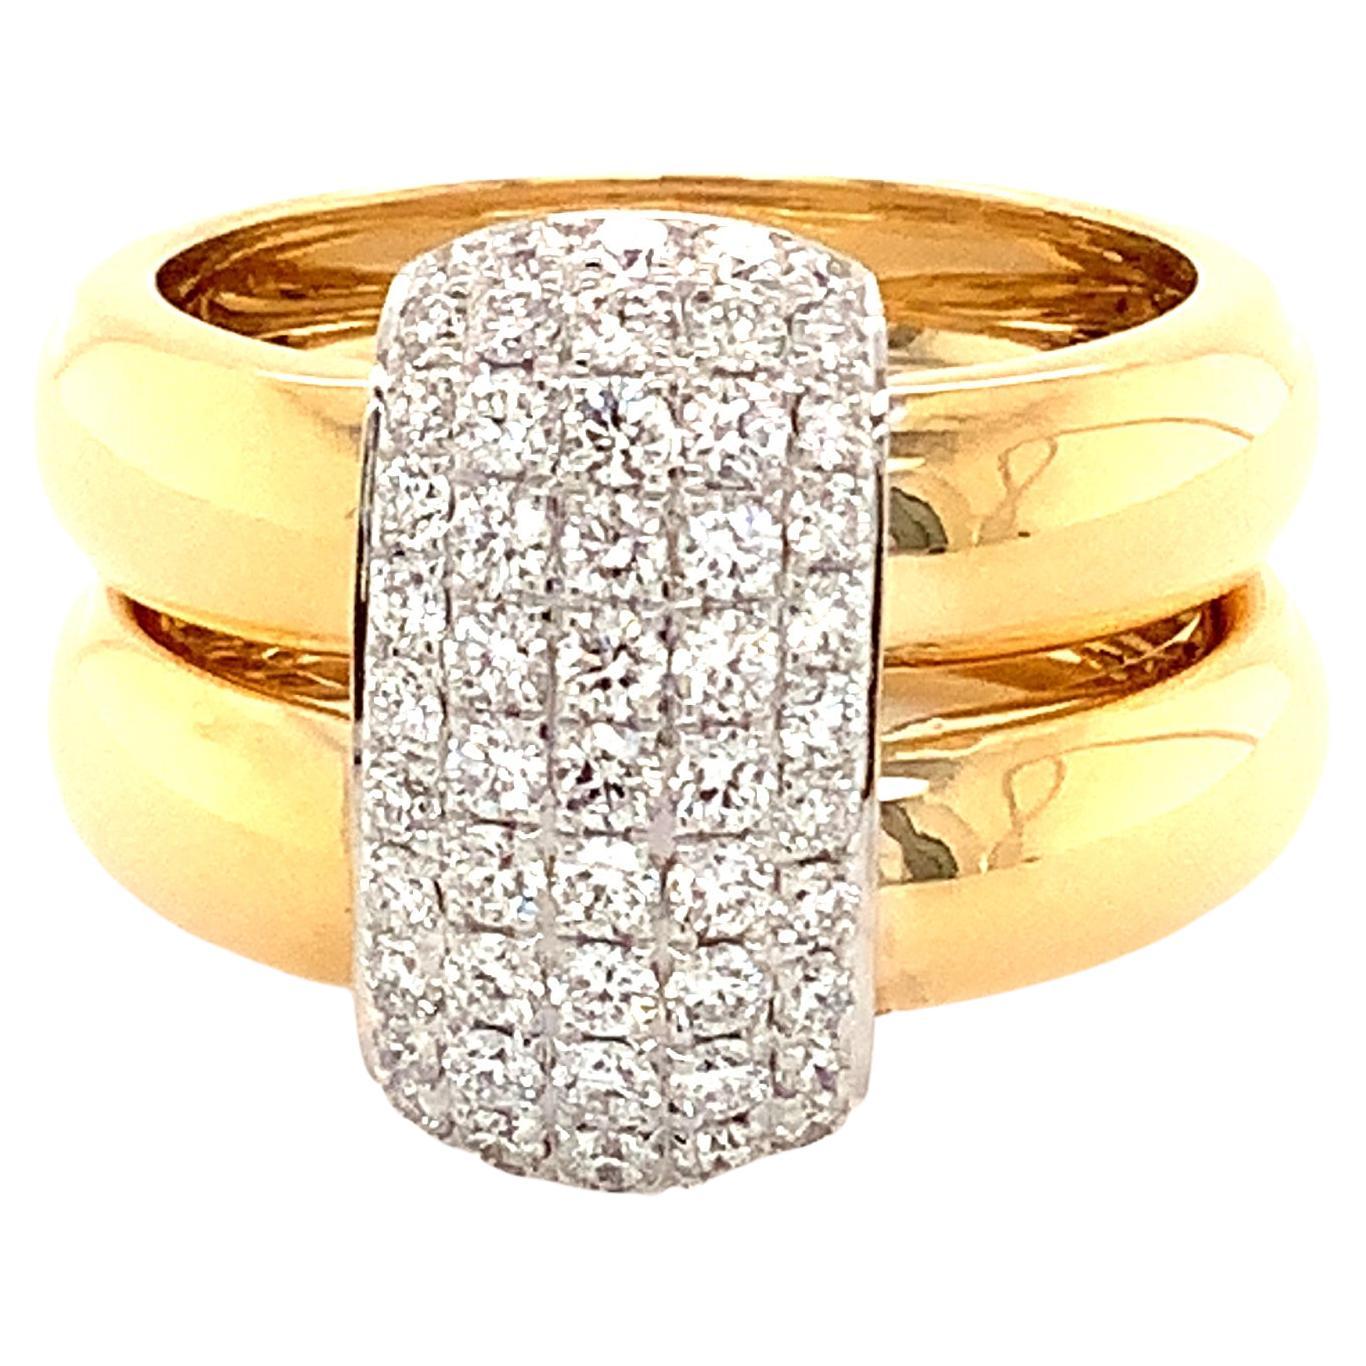 Afarin Collection 18K Hochglanzpoliert Zweifarbig 5 Reihen Pavé Diamant Doppelring